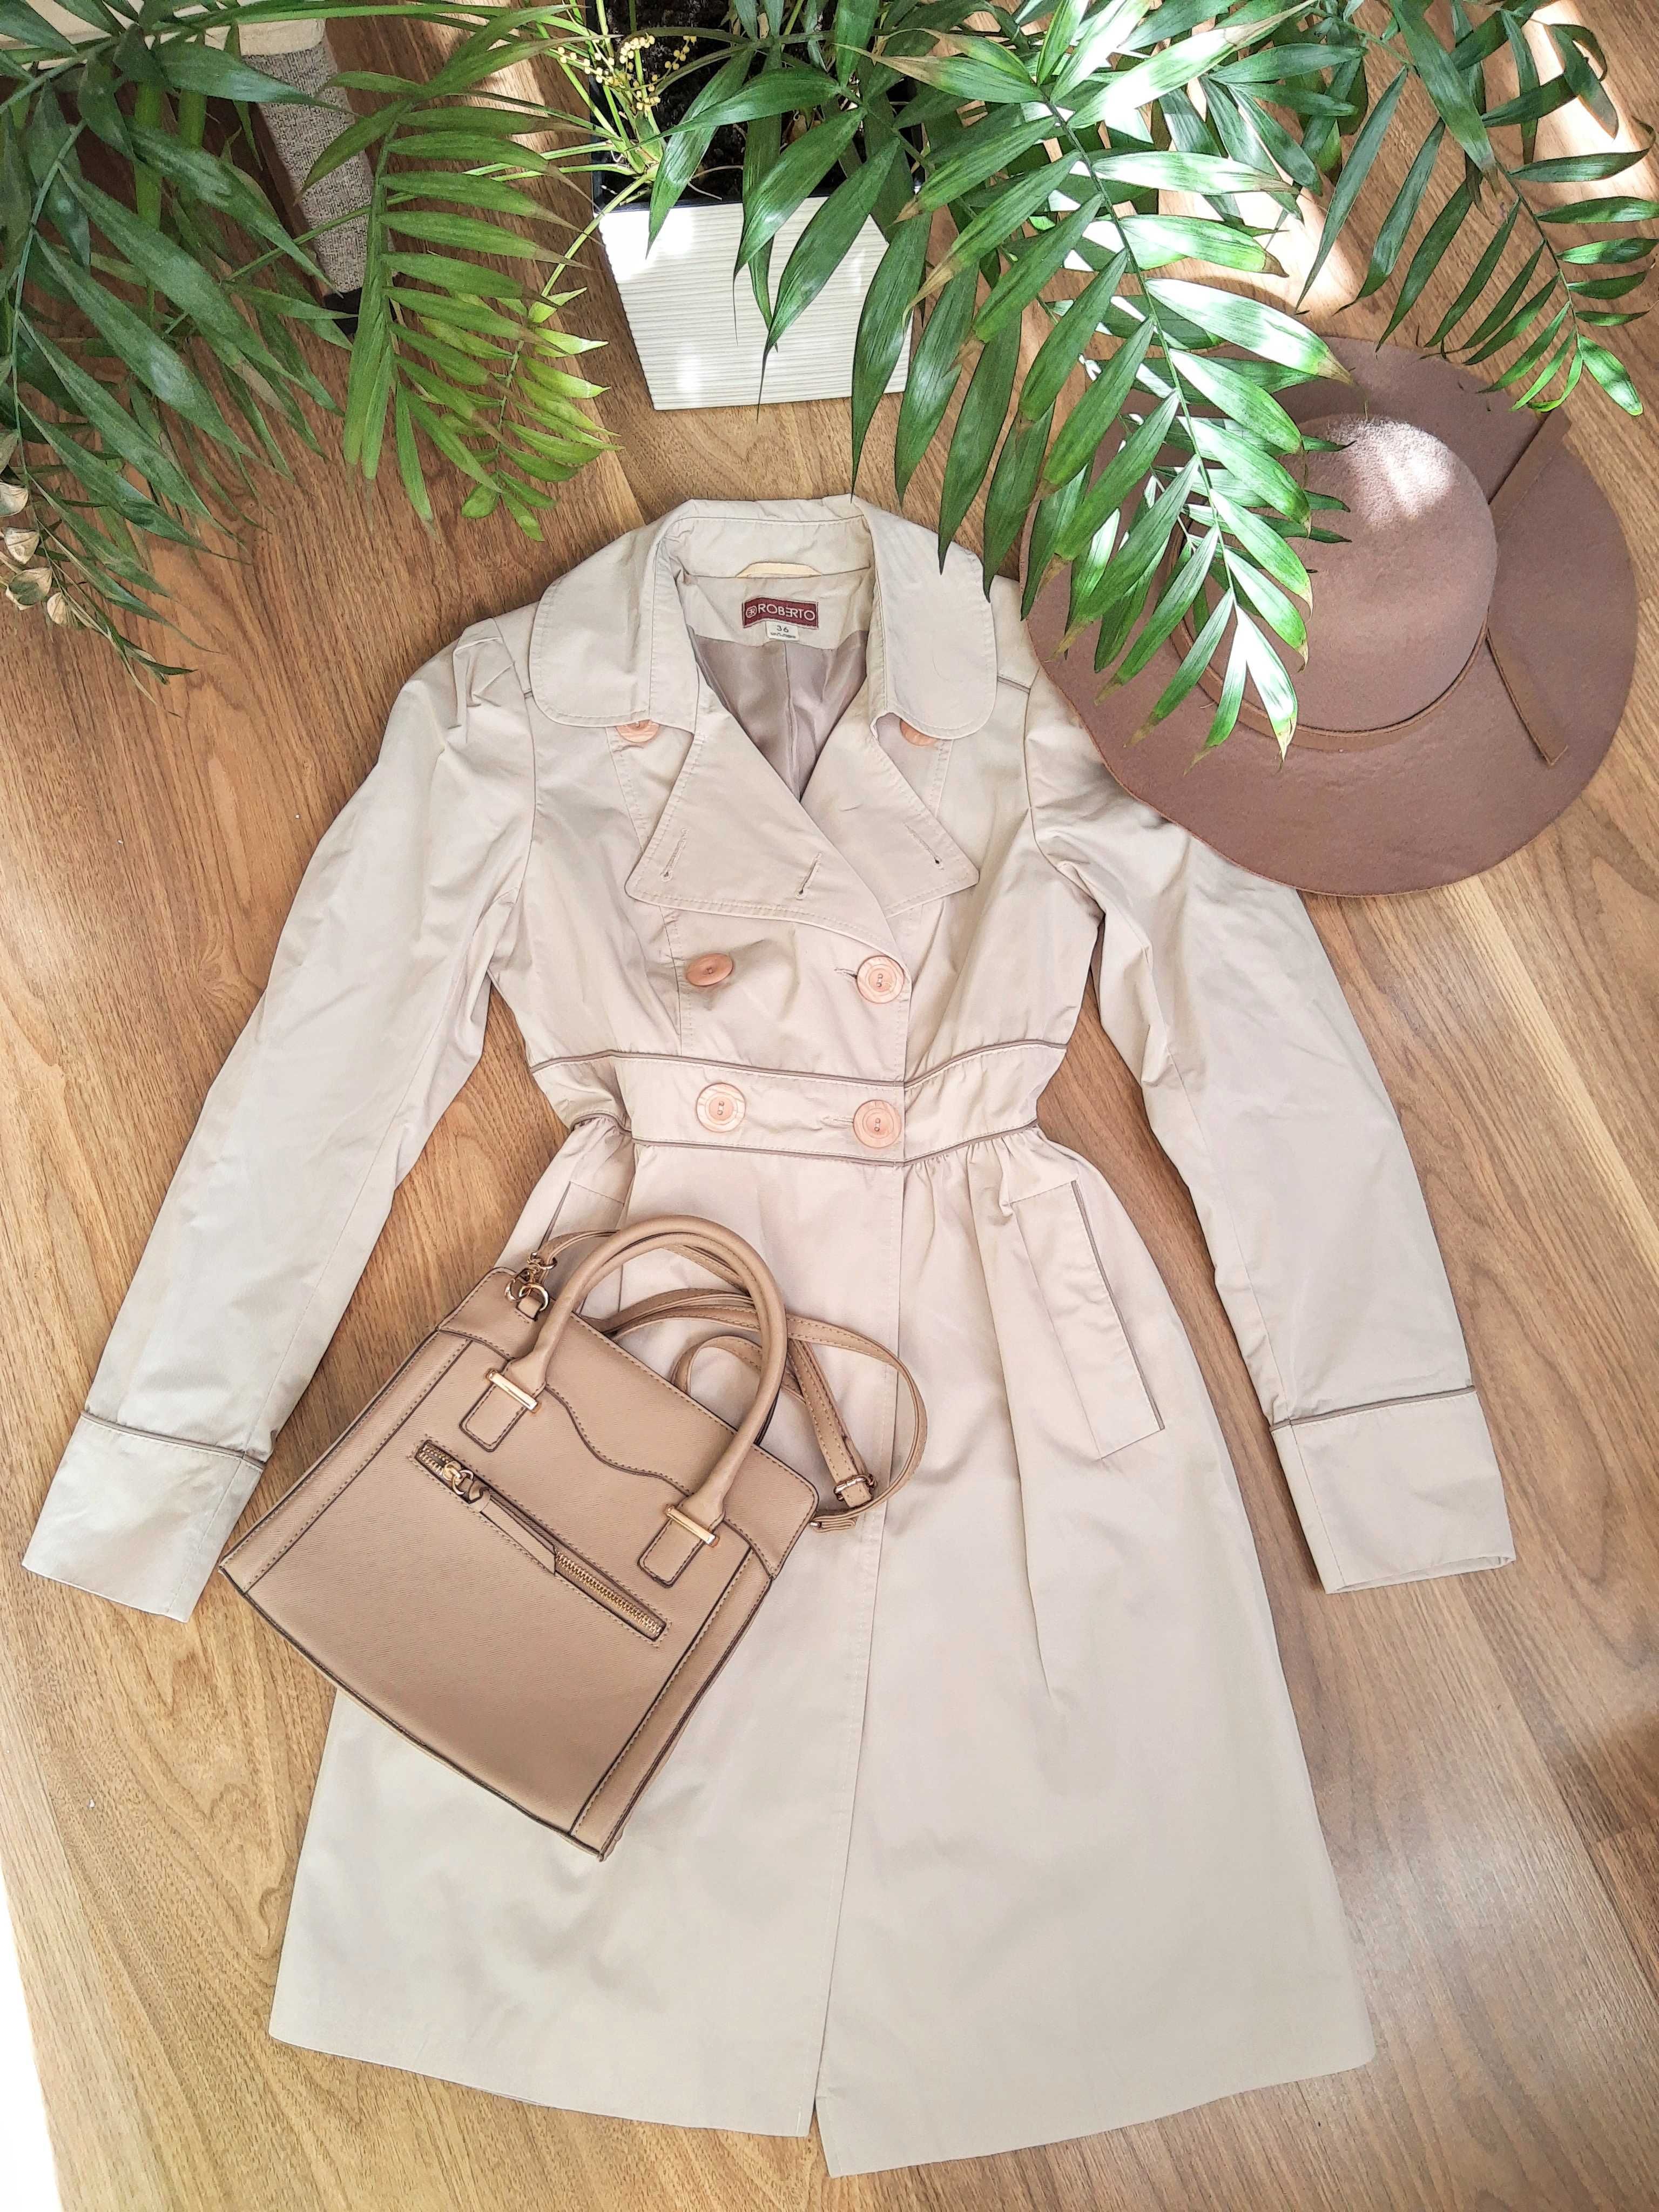 Beżowy wiosenny płaszczyk S-XS dwurzędowy bawełniany elegancki trencz